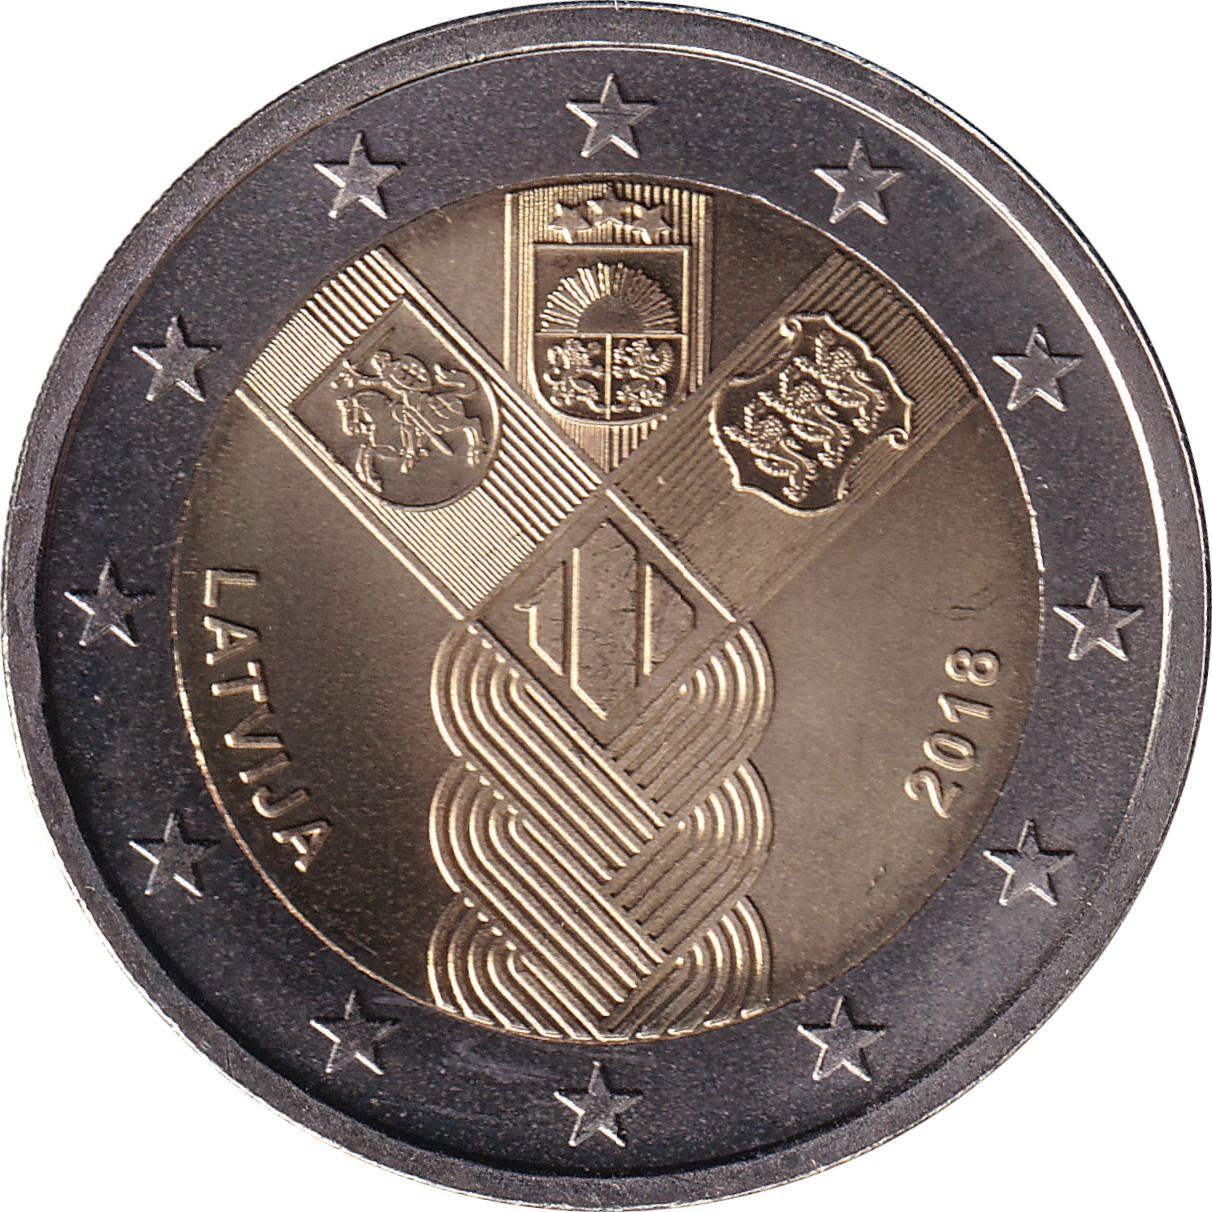 2 euro - Indépendance des Etats Baltes - 100 ans